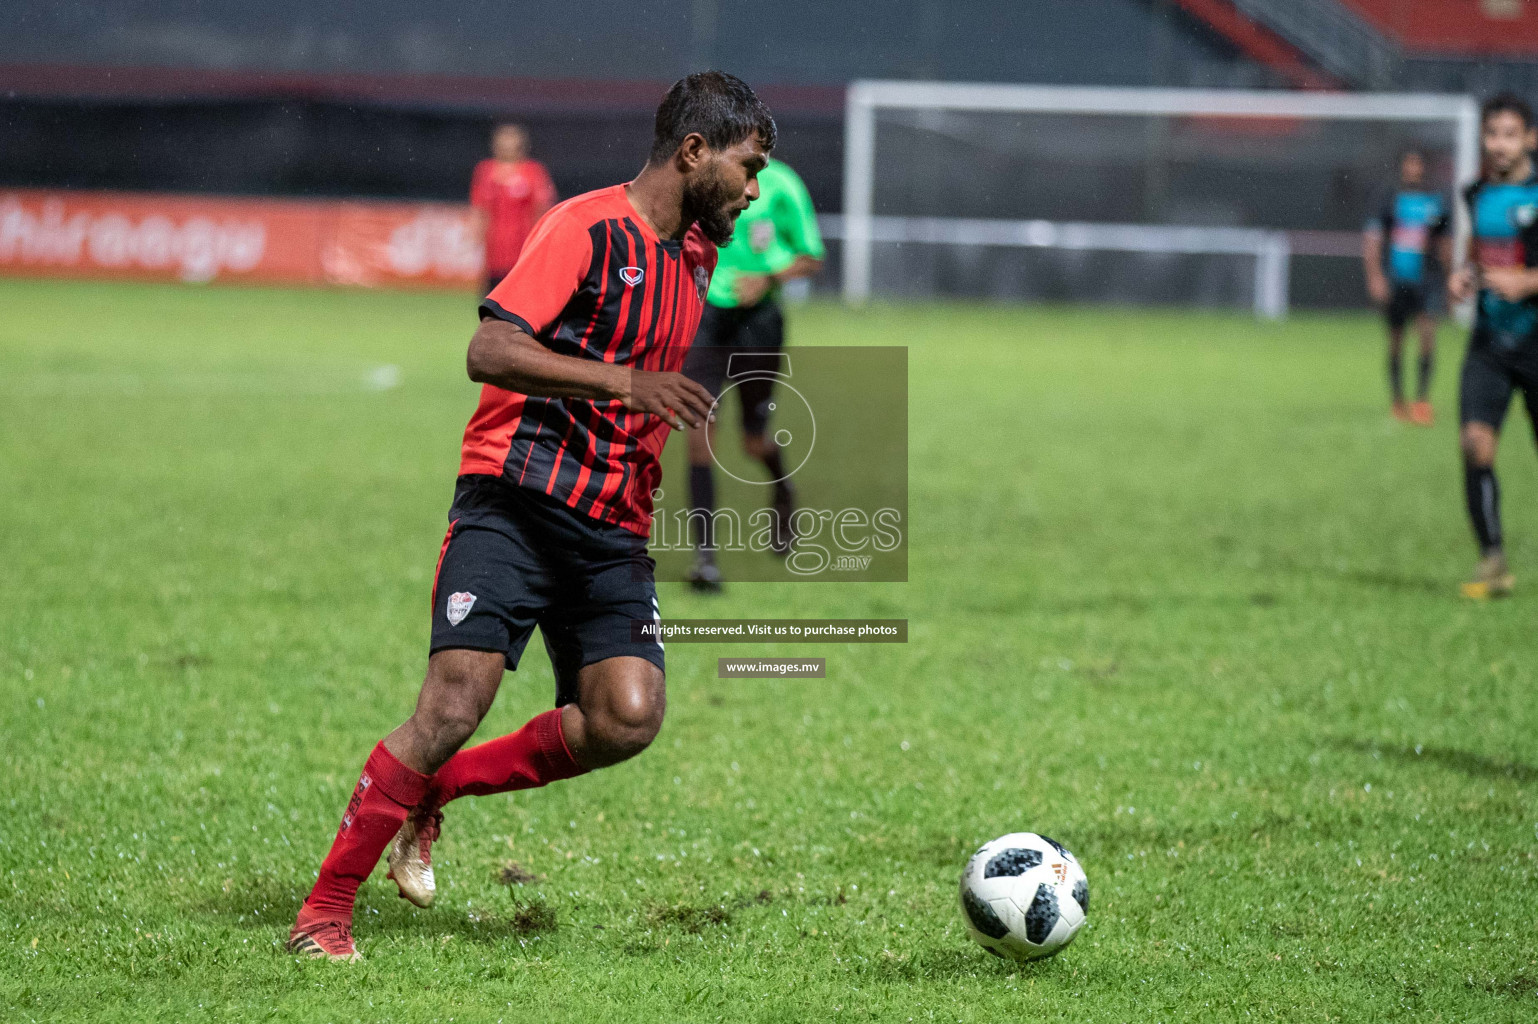 TC Sports Club vs Foakaidhoo FC in Dhiraagu Dhivehi Premier League 2019, in Male' Maldives on 23rd Sep 2019. Photos:Suadh Abdul Sattar / images.mv